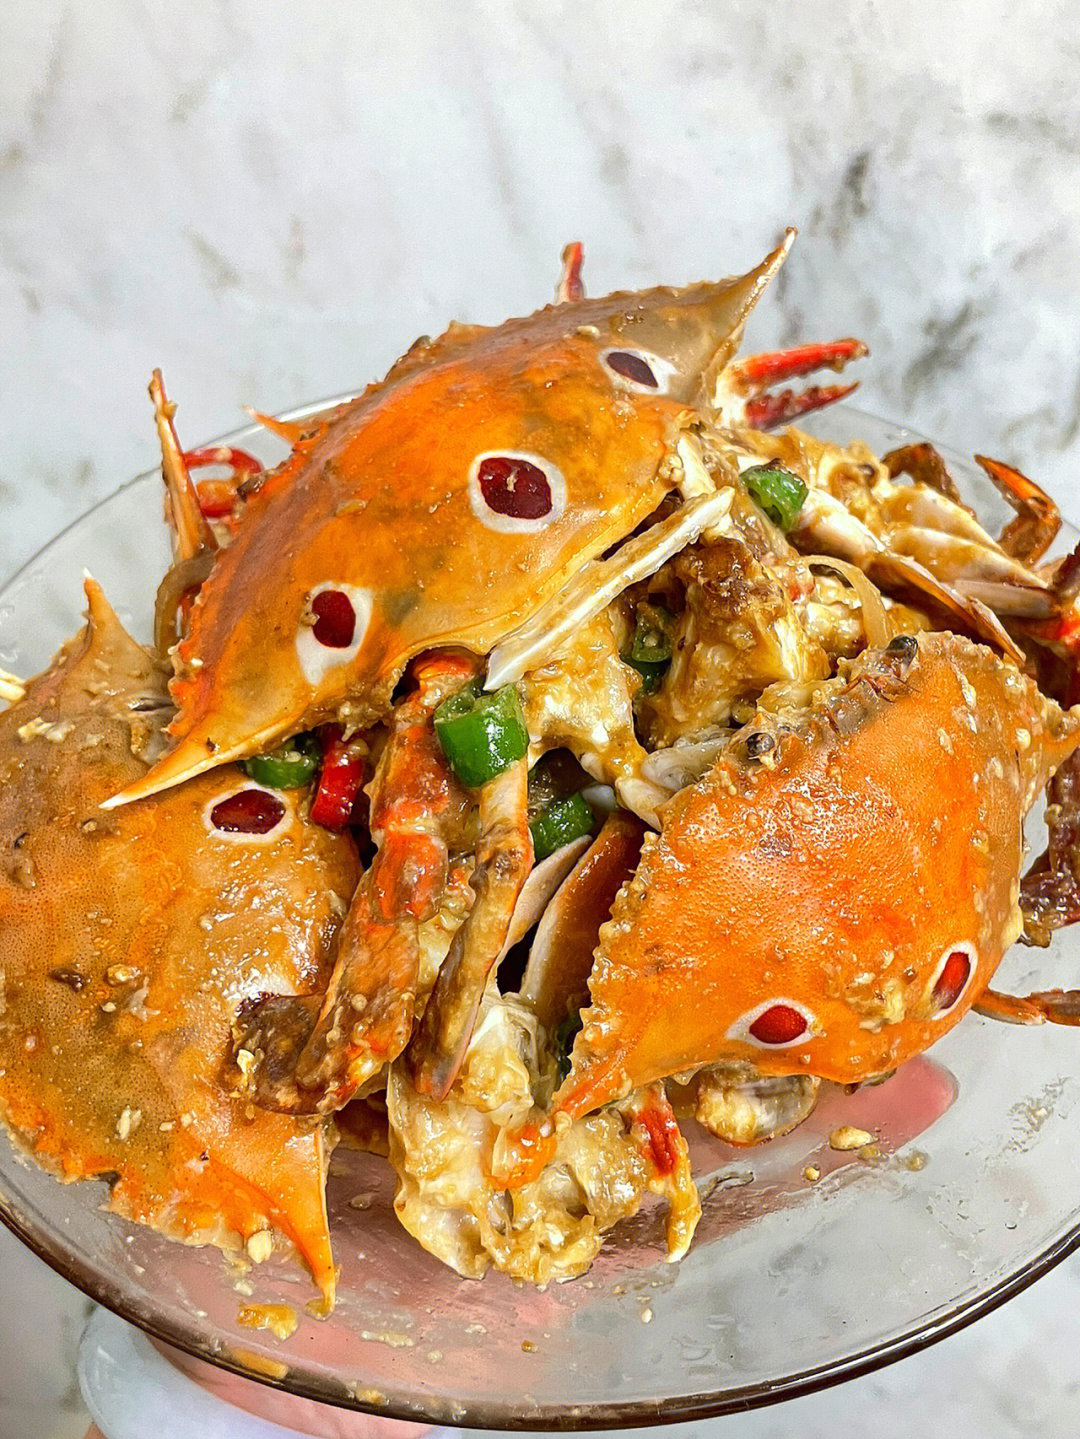 敲重点,炒螃蟹动作要快,一定要盖锅盖焖,把辣椒的辣味和螃蟹的鲜甜